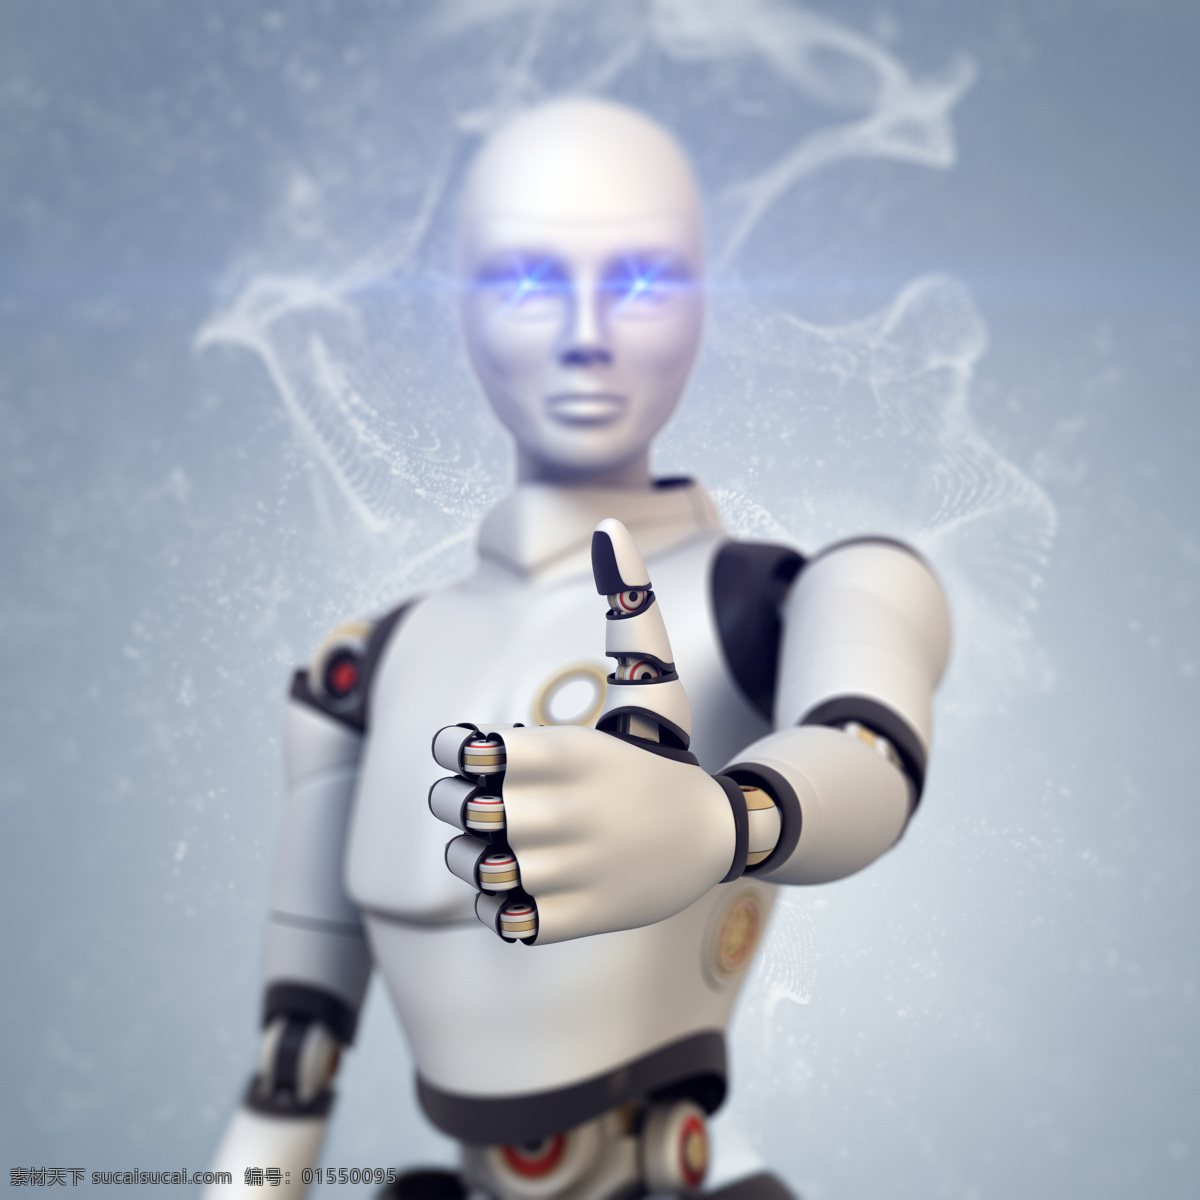 竖 大拇指 机器人 竖大拇指 顶呱呱手势 机械人 未来科技 其他类别 生活百科